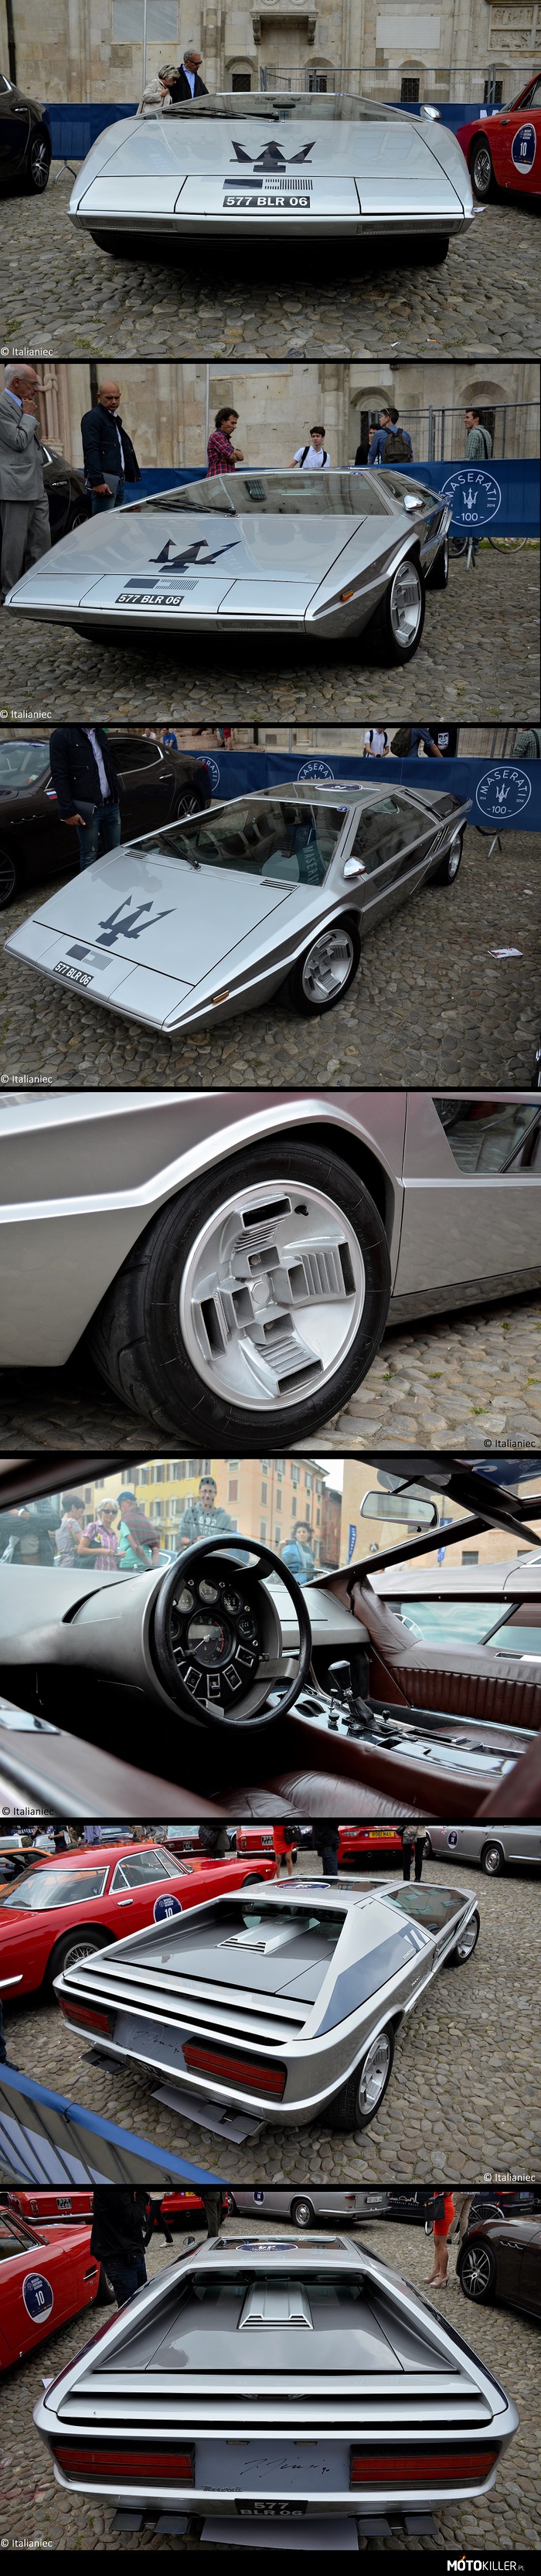 Maserati Boomerang – W pełni funkcjonalny prototyp z 1972. 
Zaprojektowana przez Giorgetto Giugiaro z charakterystyczną deską rozdzielczą, znajdująca się praktycznie w obręczy kierownicy. To dotyczy i liczników i przełączników. 
Za siedzeniami pracuje jednostka V8 o pojemności 4,7 litra i mocy 310 KM, która pozwalała się rozpędzić do 300 km/h.
Ten model został zarejestrowany do ruchu publicznego, ale zawsze służył do ekspozycji. Od 1974 znajduję się u prywatnych właścicieli. 